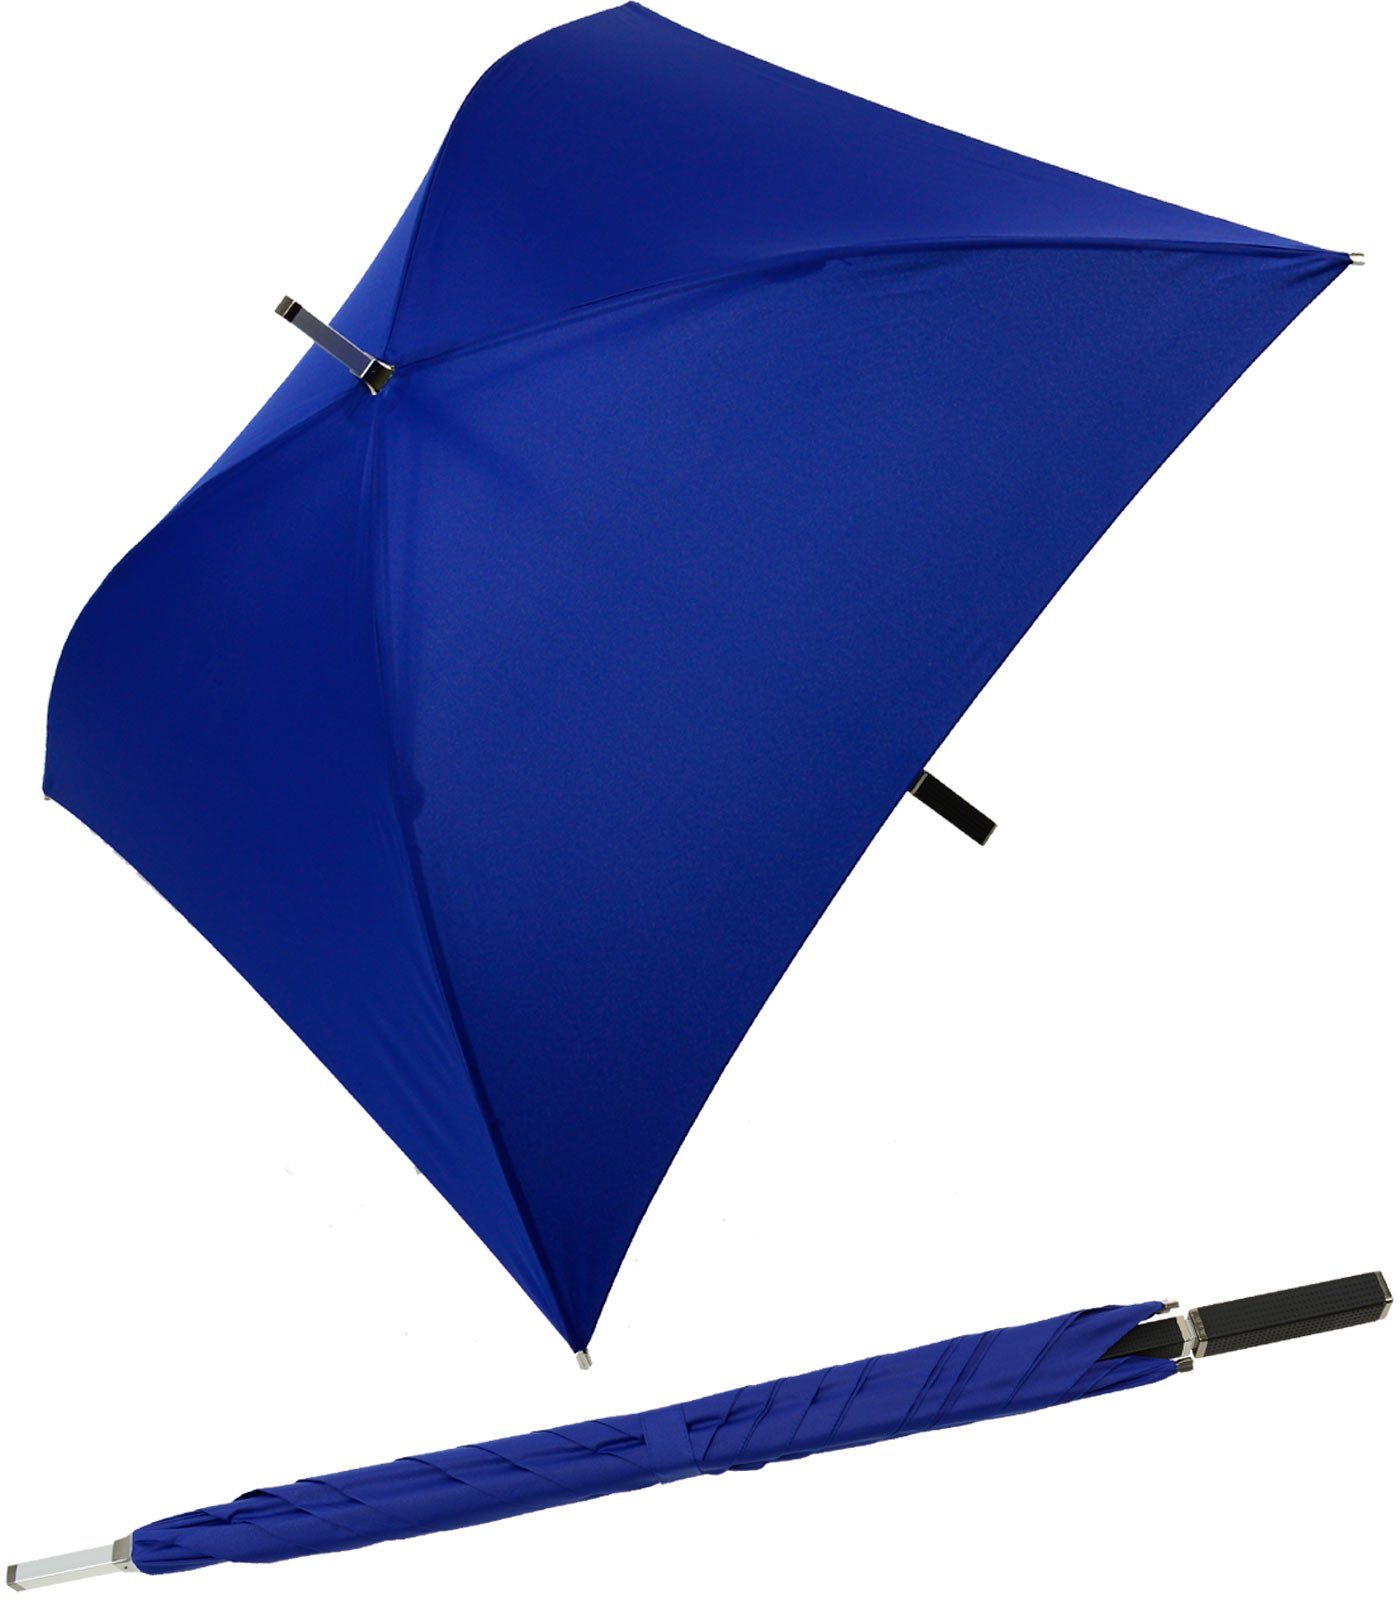 Impliva Langregenschirm All Square® voll quadratischer Regenschirm, der ganz besondere Regenschirm blau